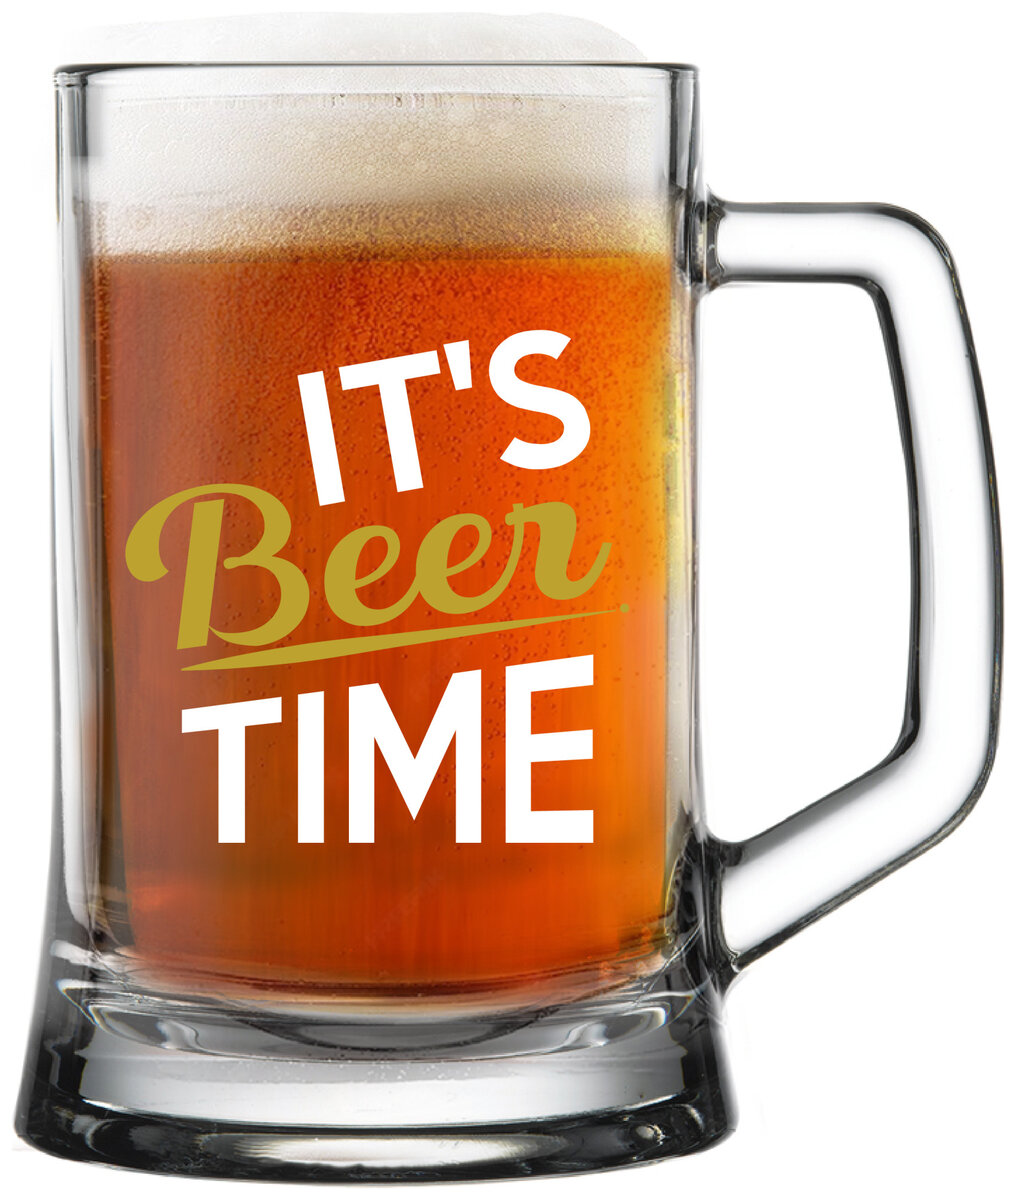 IT'S BEER TIME - pivní sklenička 0,5 l